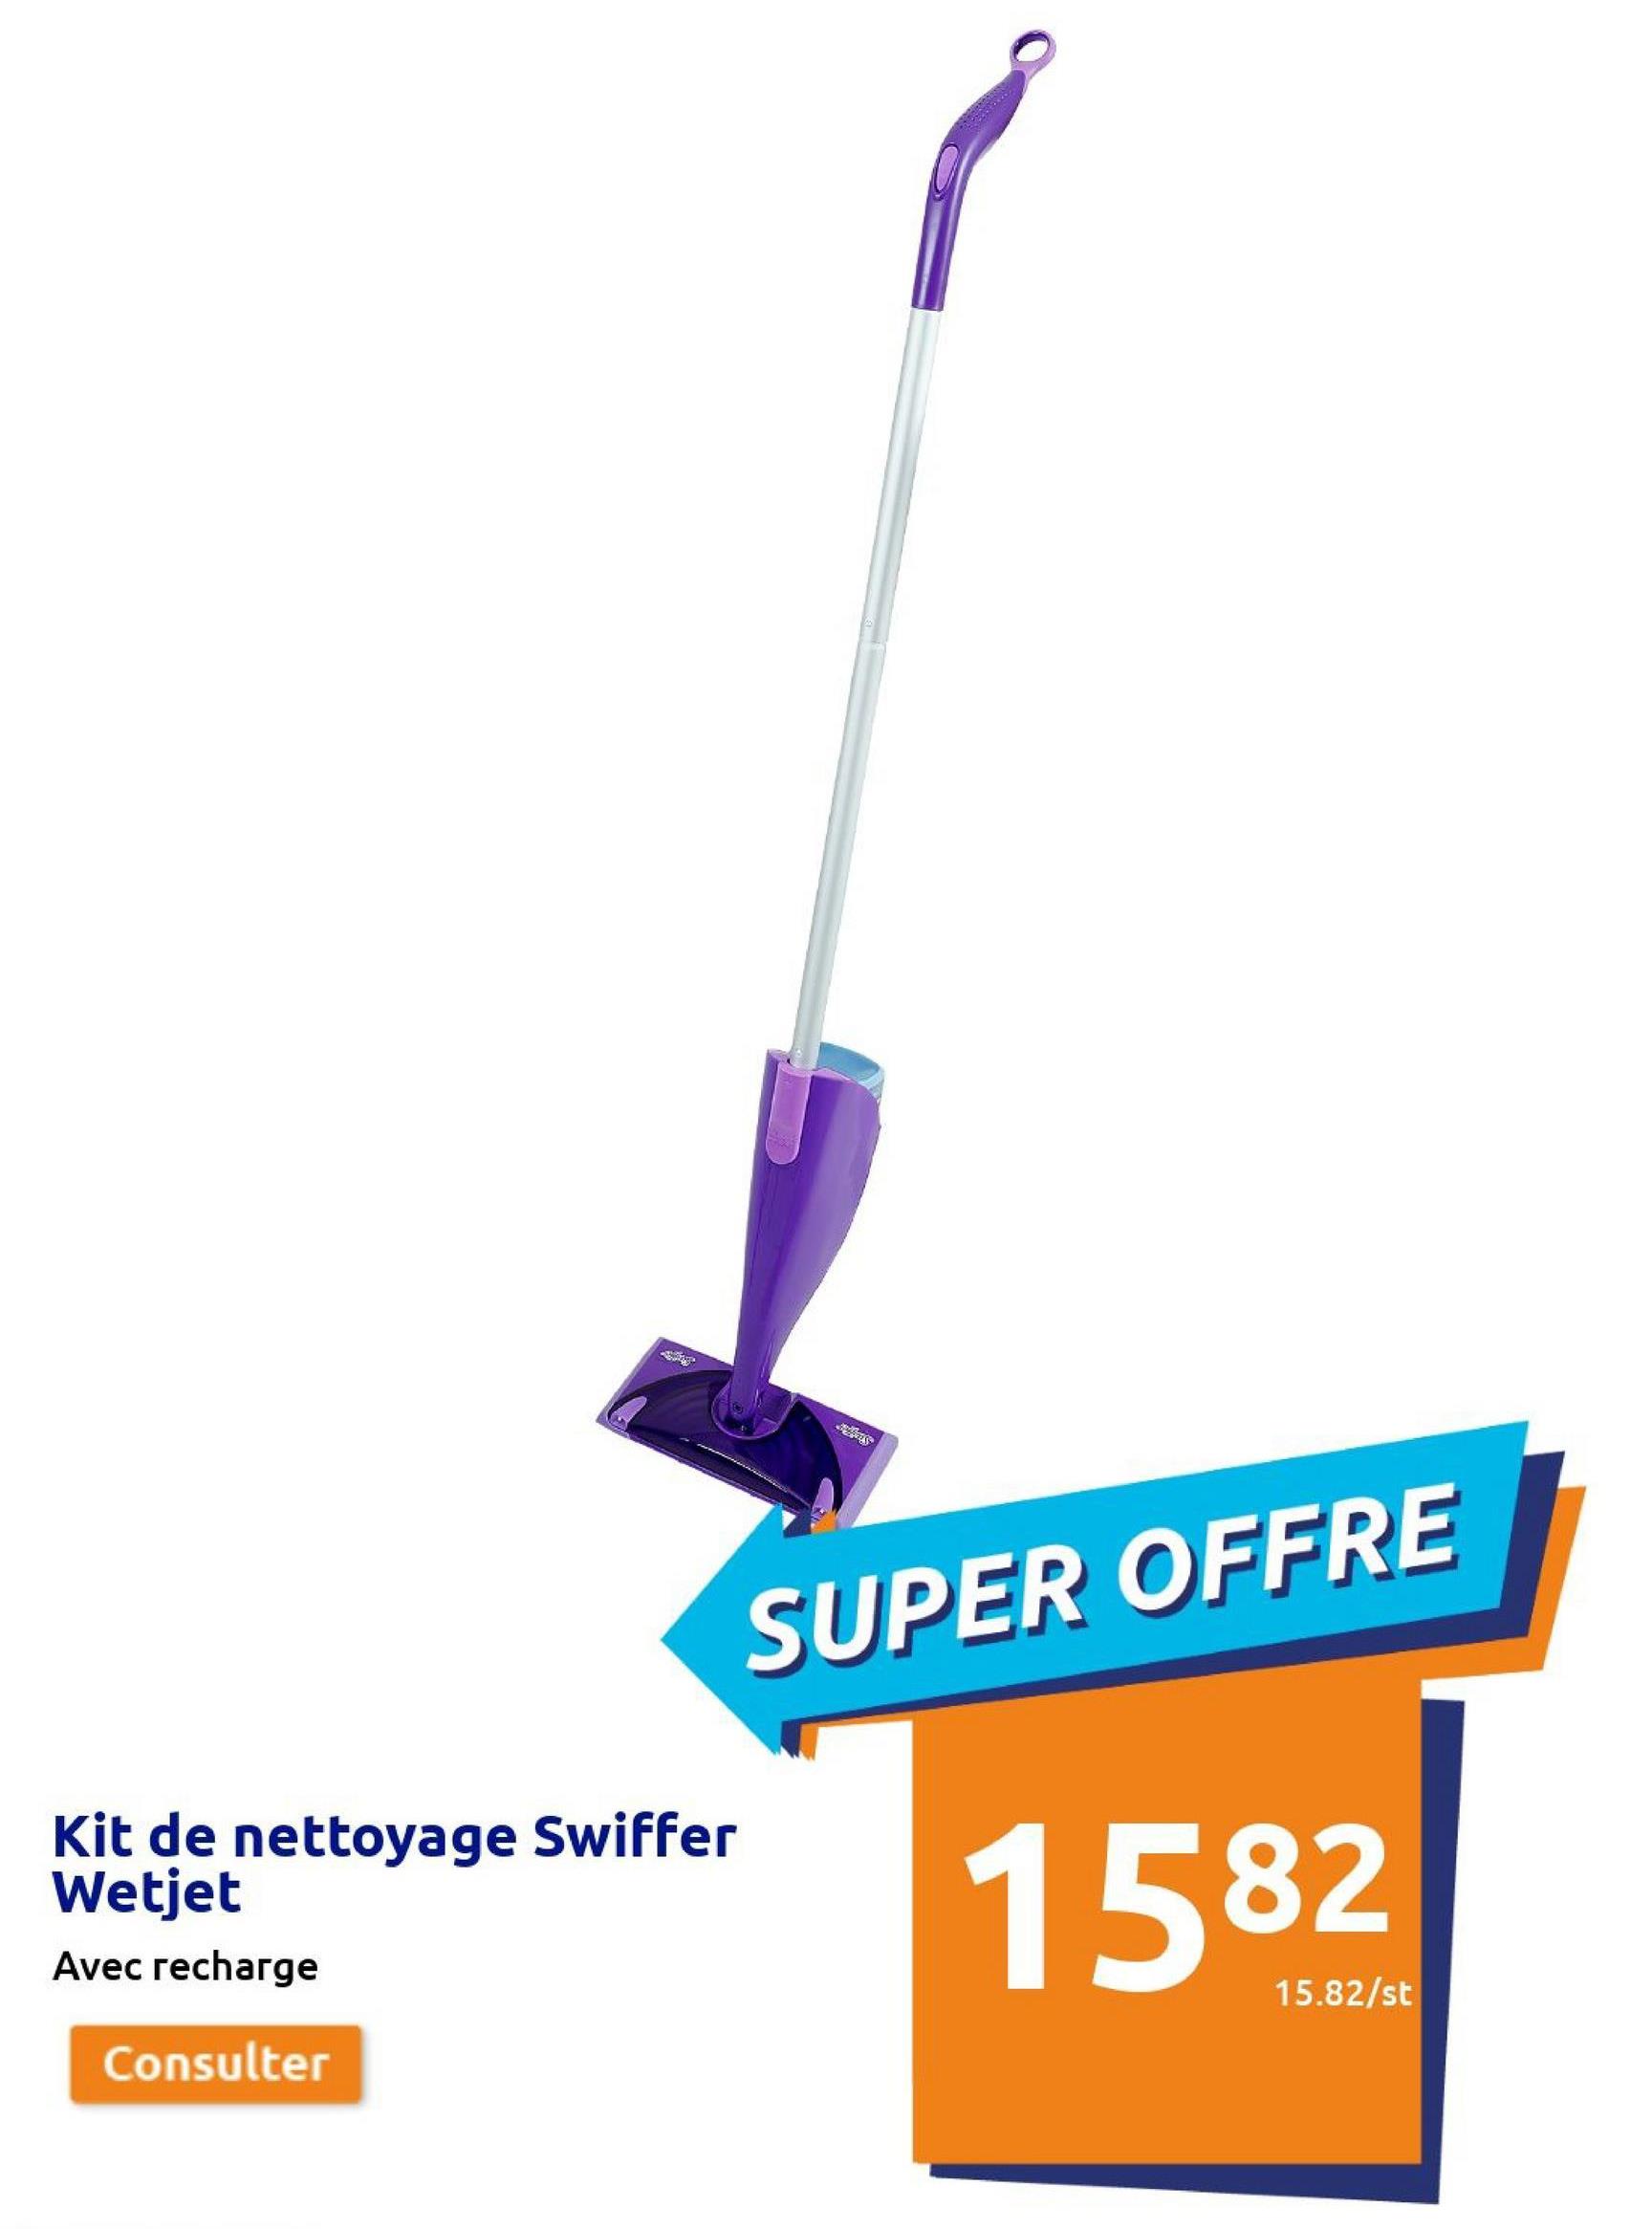 Kit de nettoyage Swiffer
Wetjet
Avec recharge
Consulter
SUPER OFFRE
1582
15.82/st